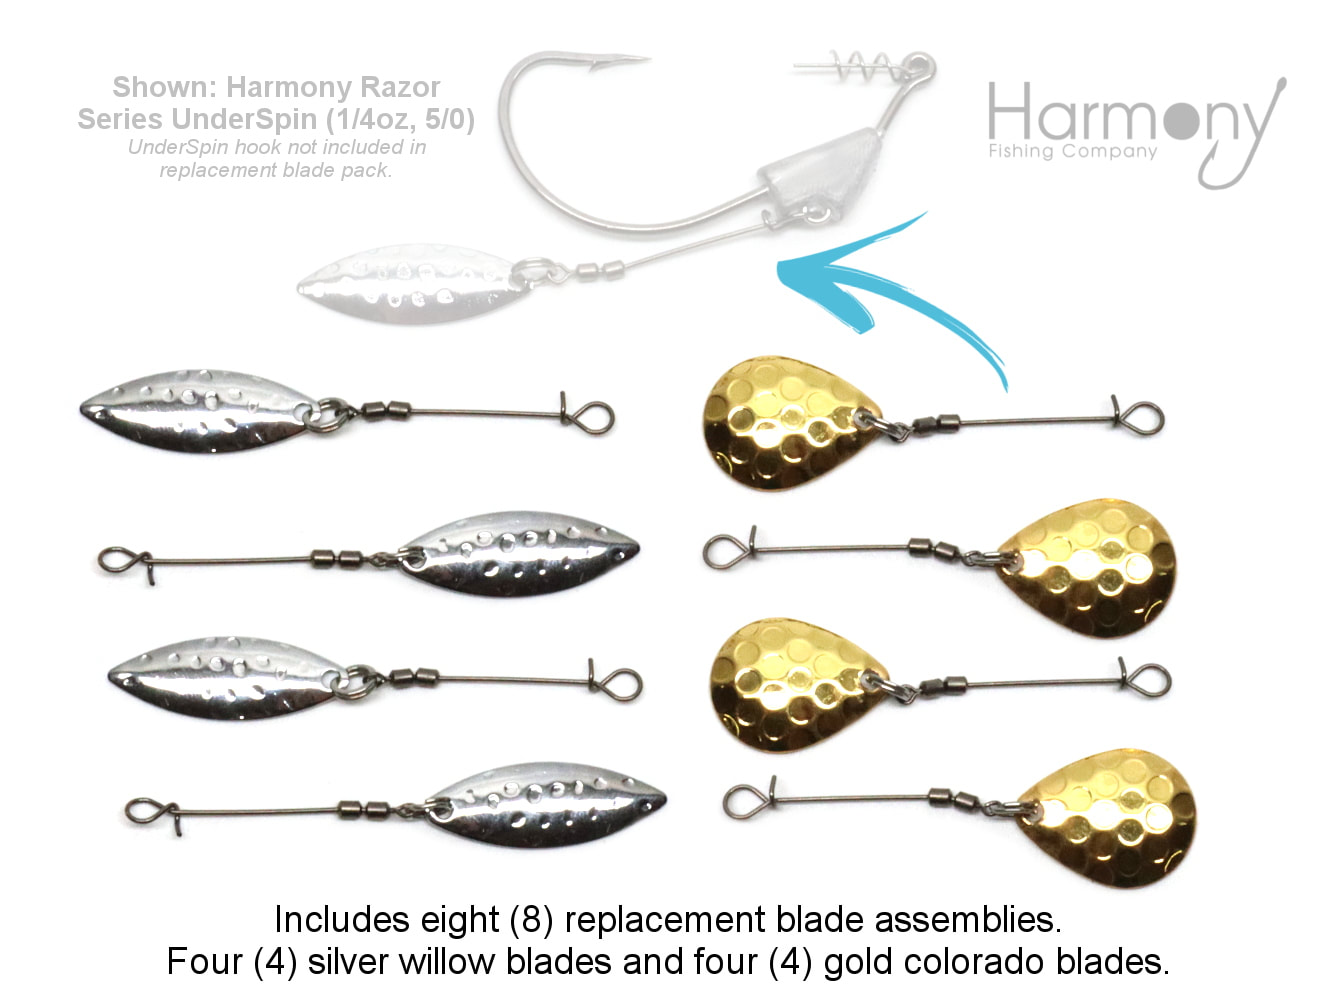 Harmony Fishing - Razor Series Underspin Swimbait Hooks (4 Pack